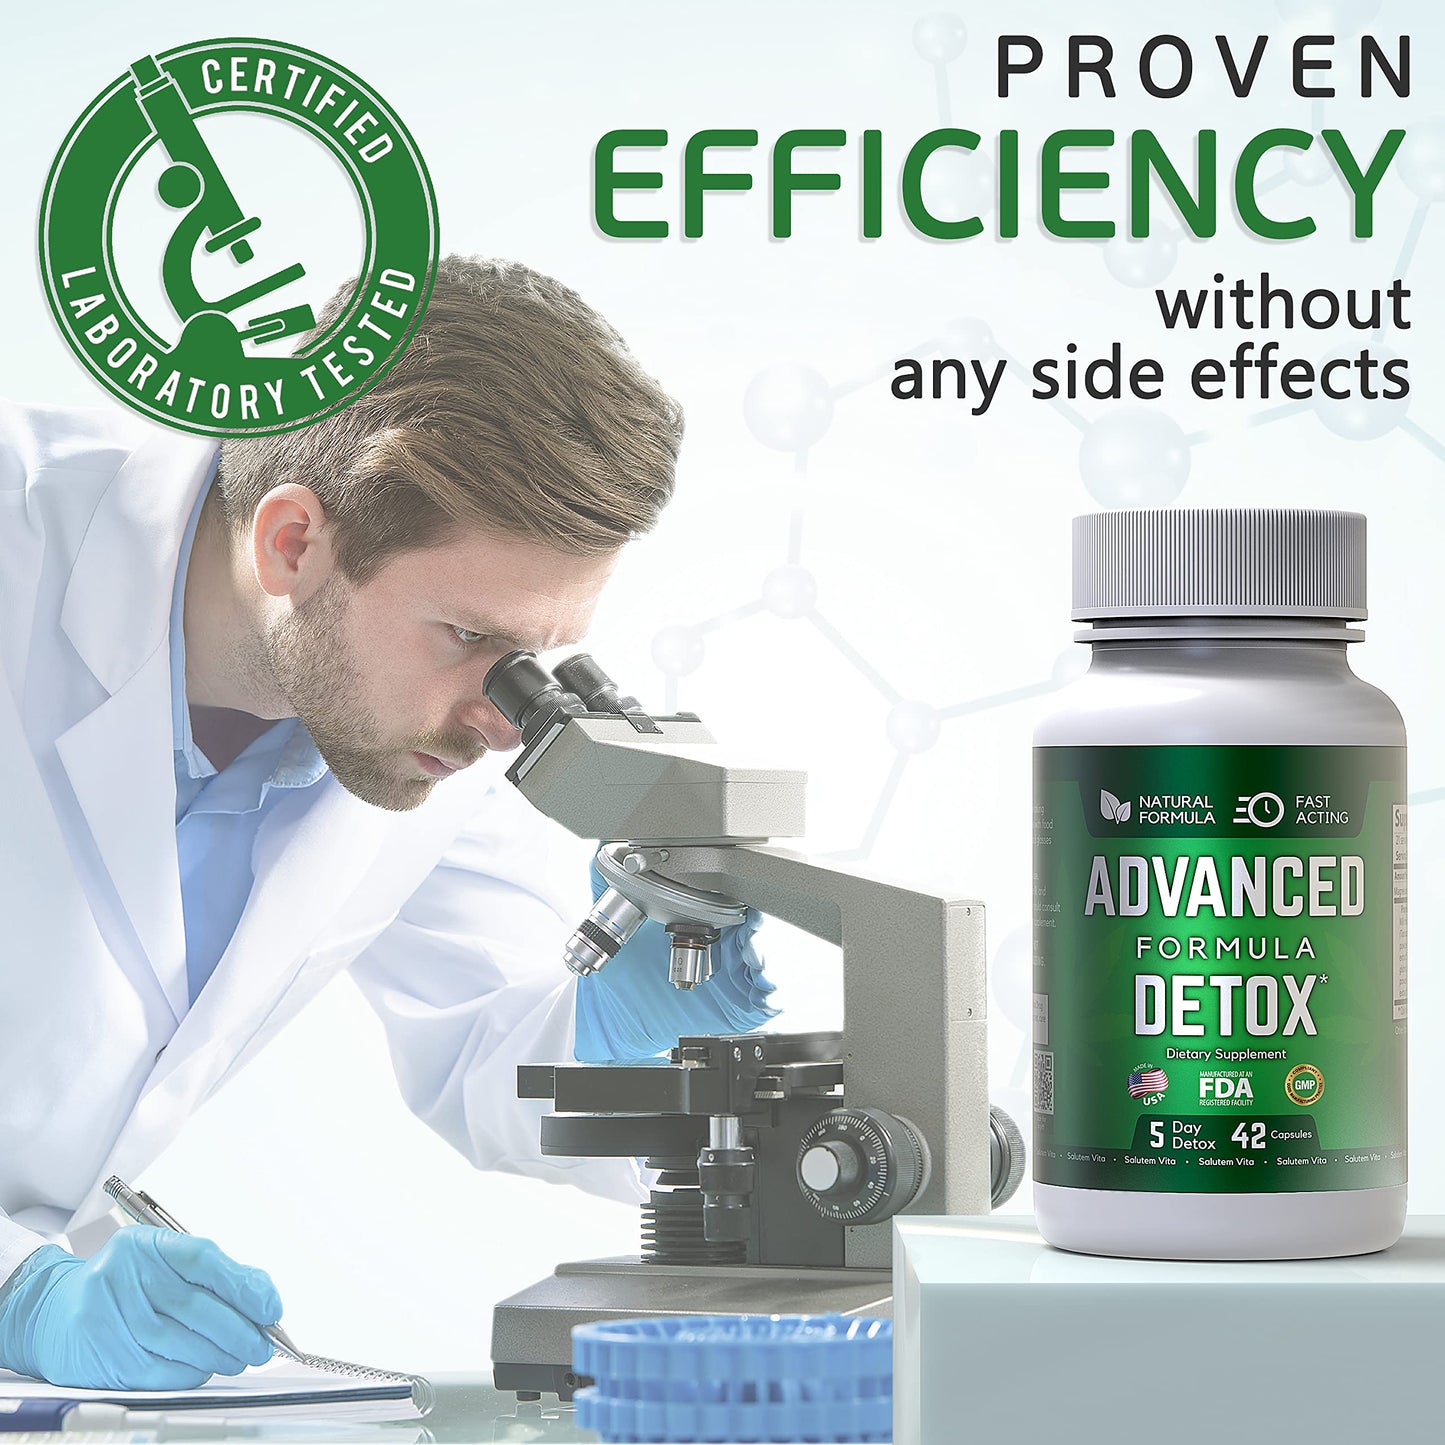 Salutem Vita Advance Formula Detox - Detox Kit - Advanced Formula Detox 2 pc, Multi Panel Test Cup 2pc - Supplement for Toxin Removal